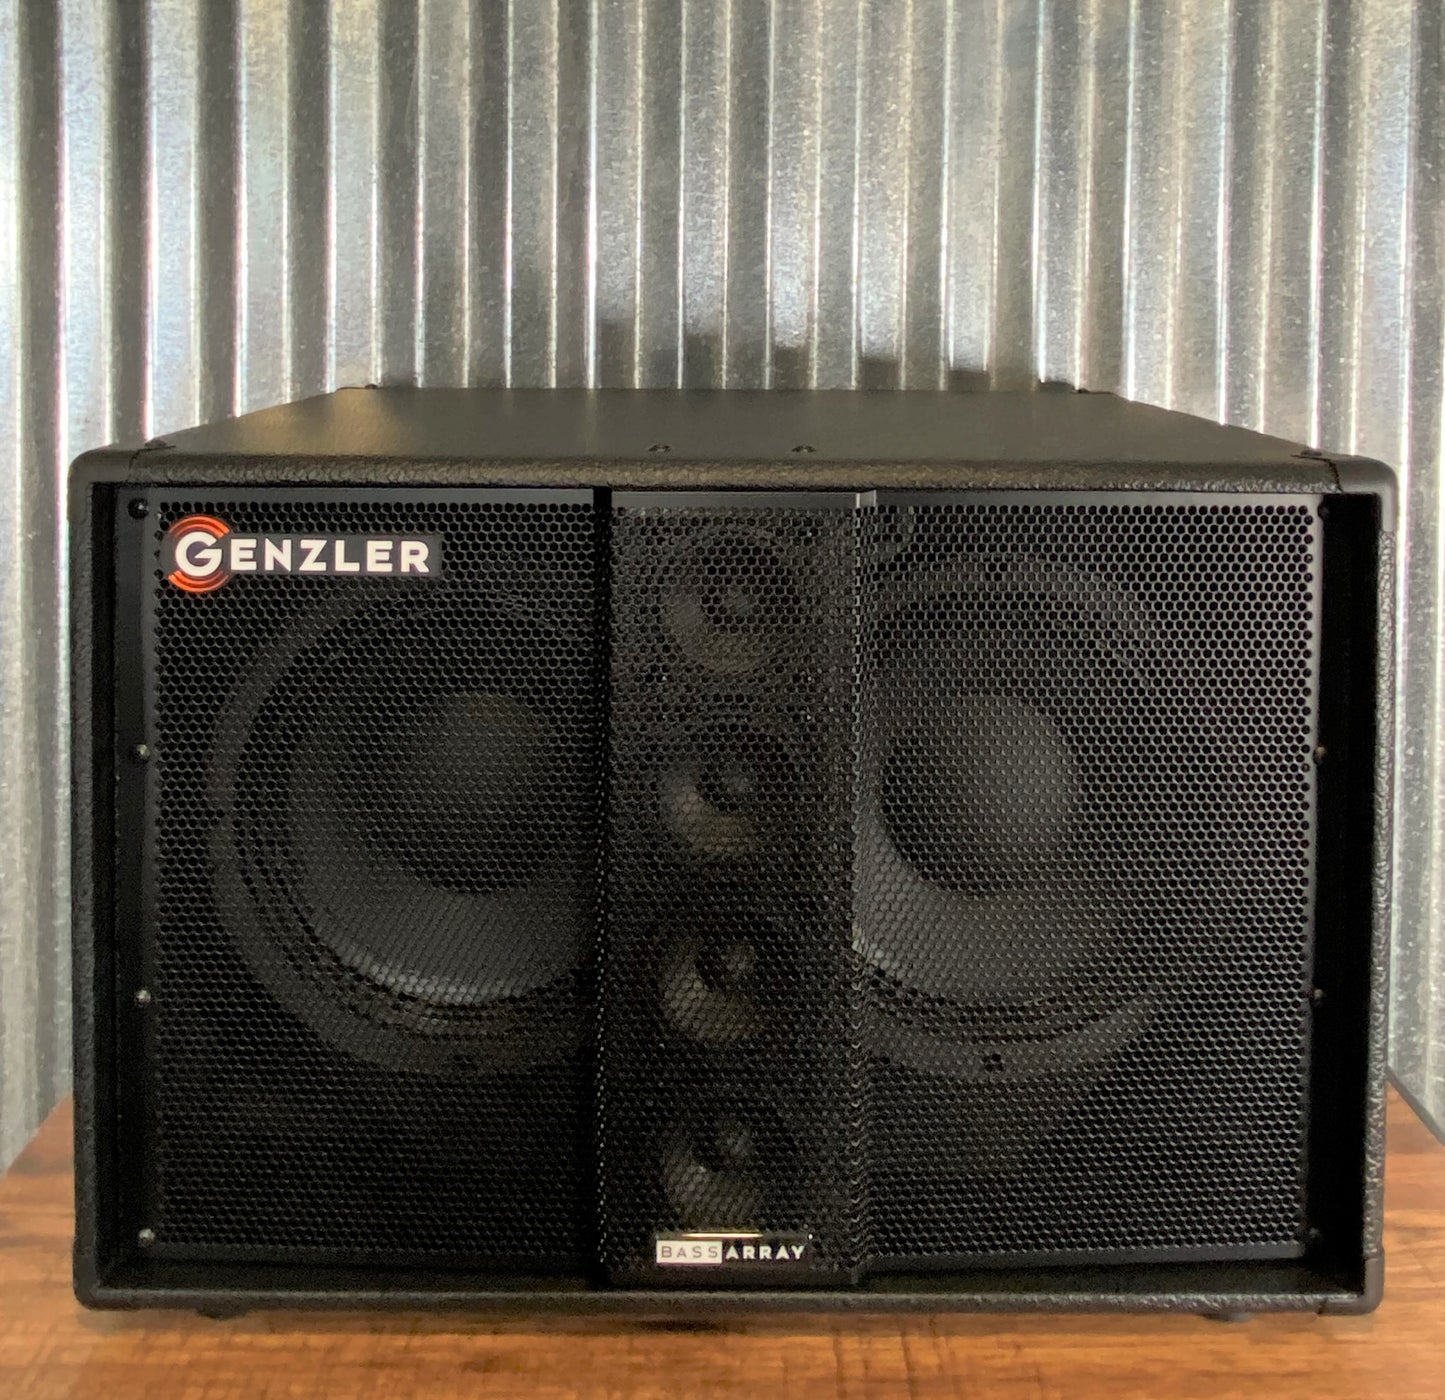 Genzler BA210-3 STRAIGHT NEO 2x10” & 4x3” Array 500 Watt 8 ohm Bass Amplifier Amplifier Speaker Cabinet